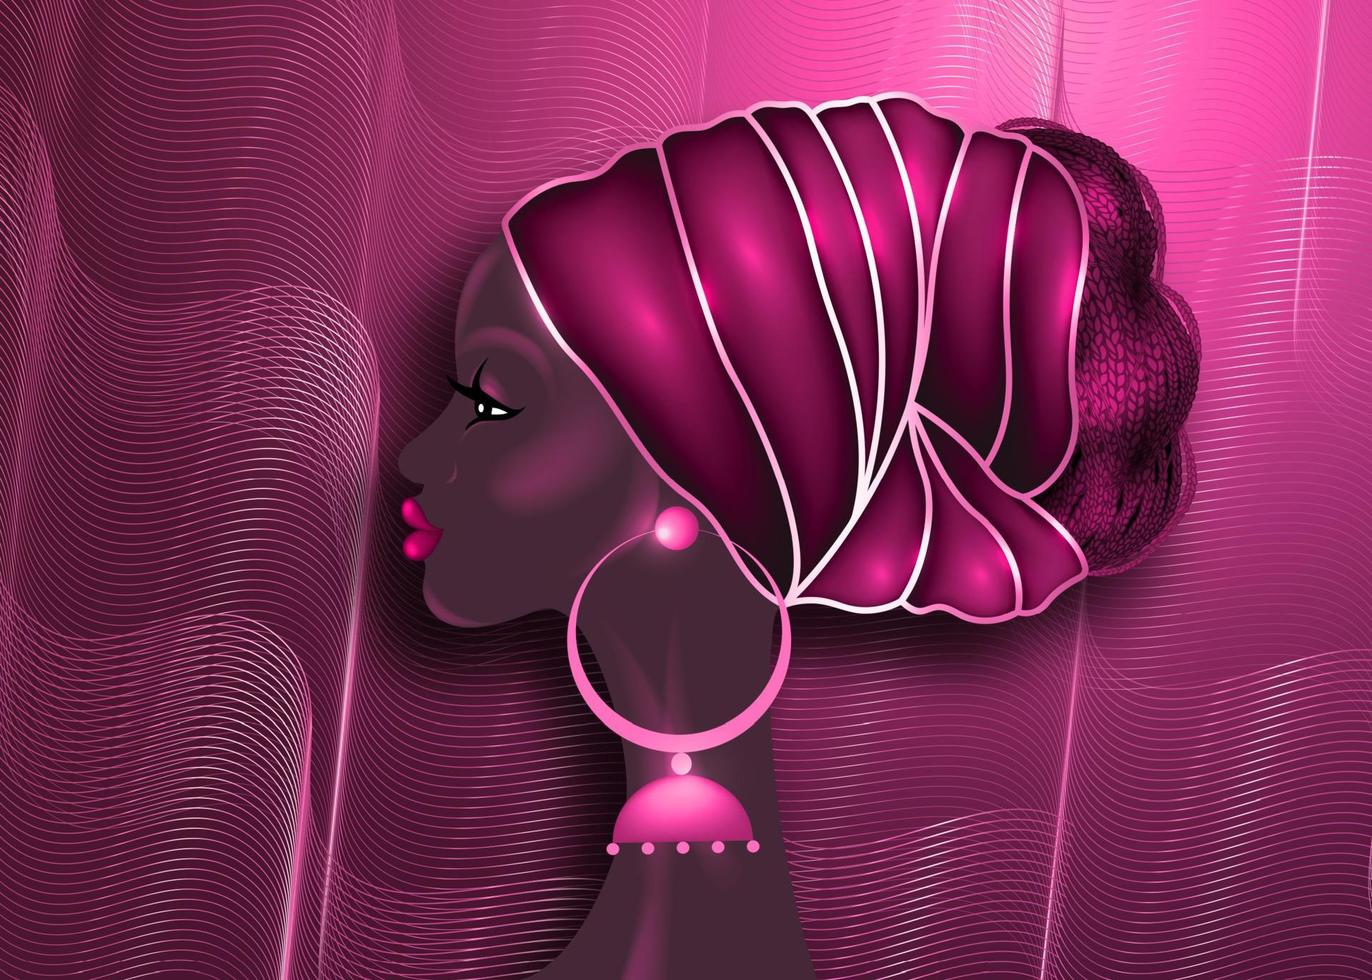 Afro-Frisur, schöne Porträt-Afrikanerin in Wachsdruckgewebe roter Turban, Diversity-Konzept. schwarze Königin, ethnische Kopfbedeckung für Afro-Zöpfe und verworrenes lockiges Haar. Vektor Mode rosa Hintergrund